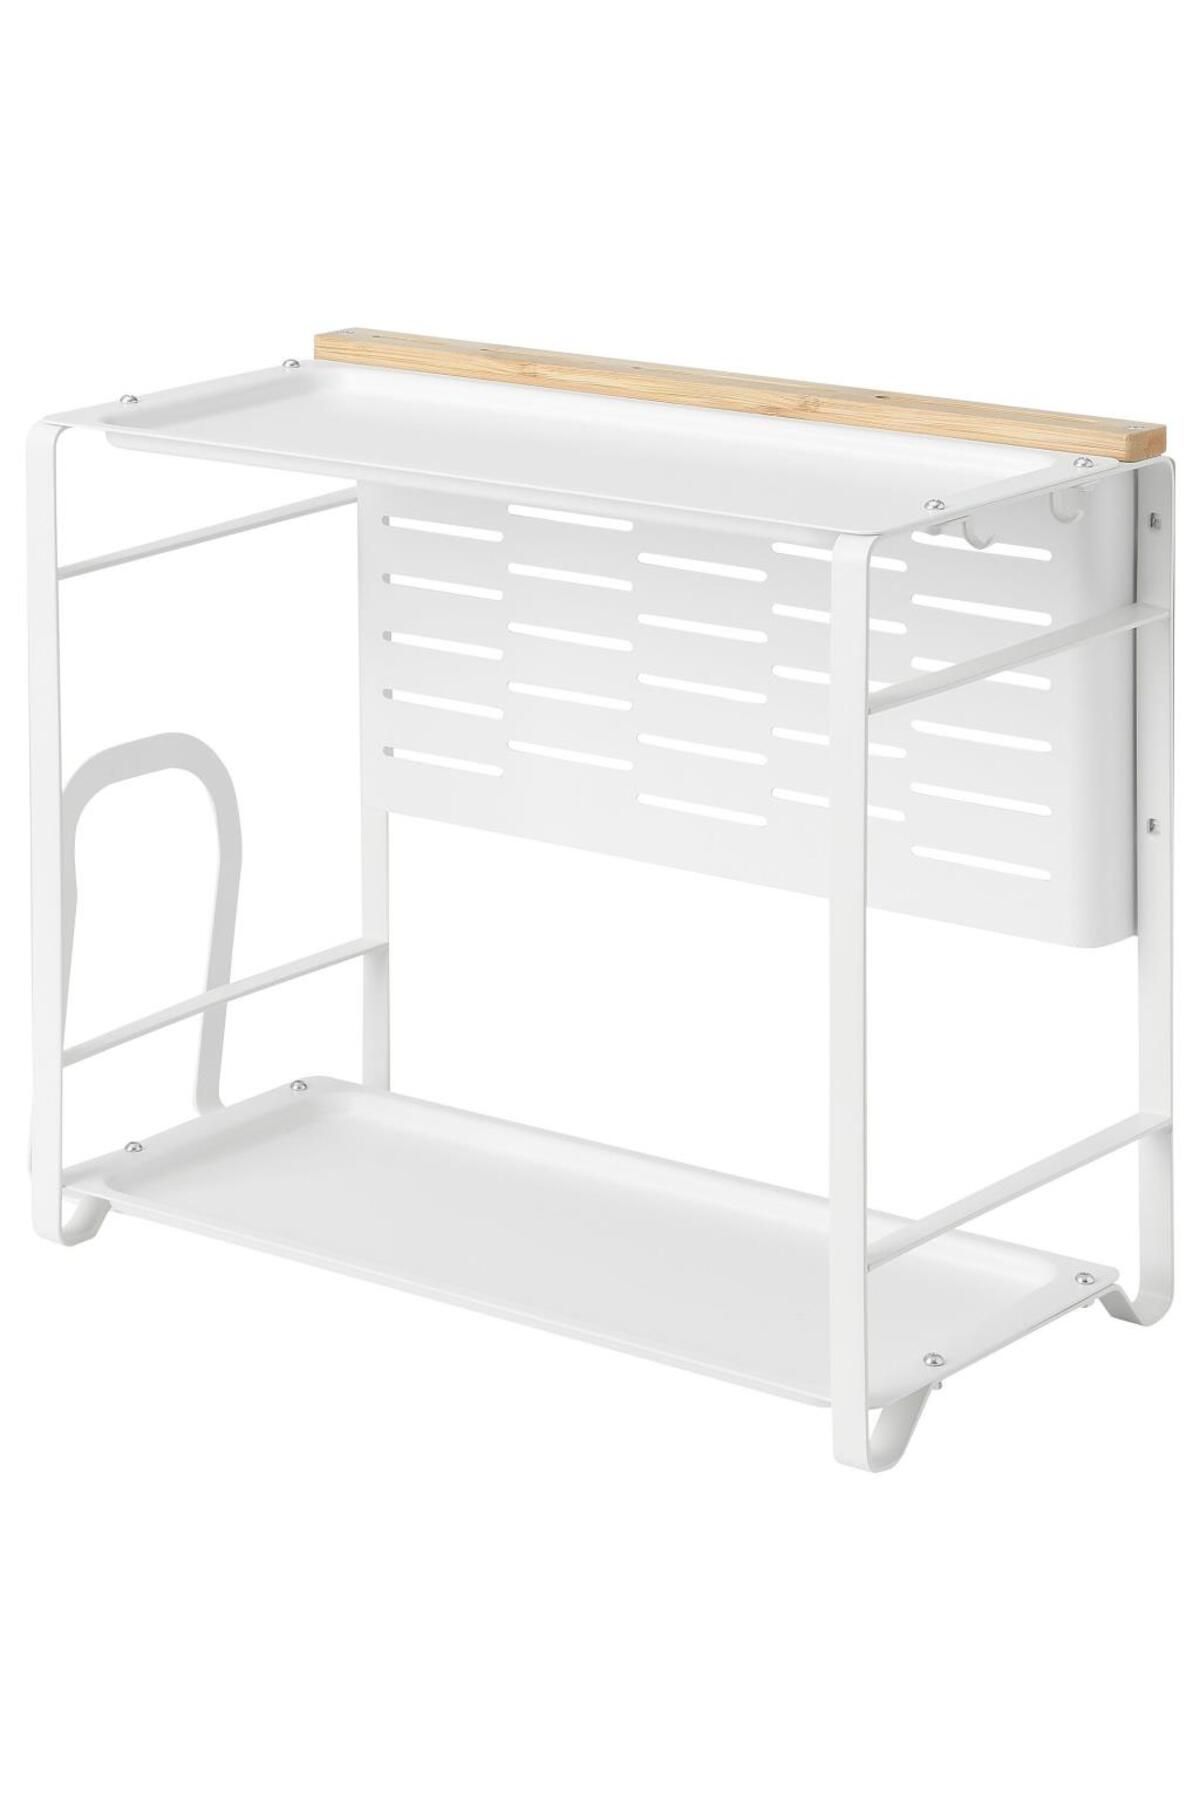 BARBUN IKEA Avsteg Tezgah Üstü Düzenleyici - Beyaz - 40x21 cm